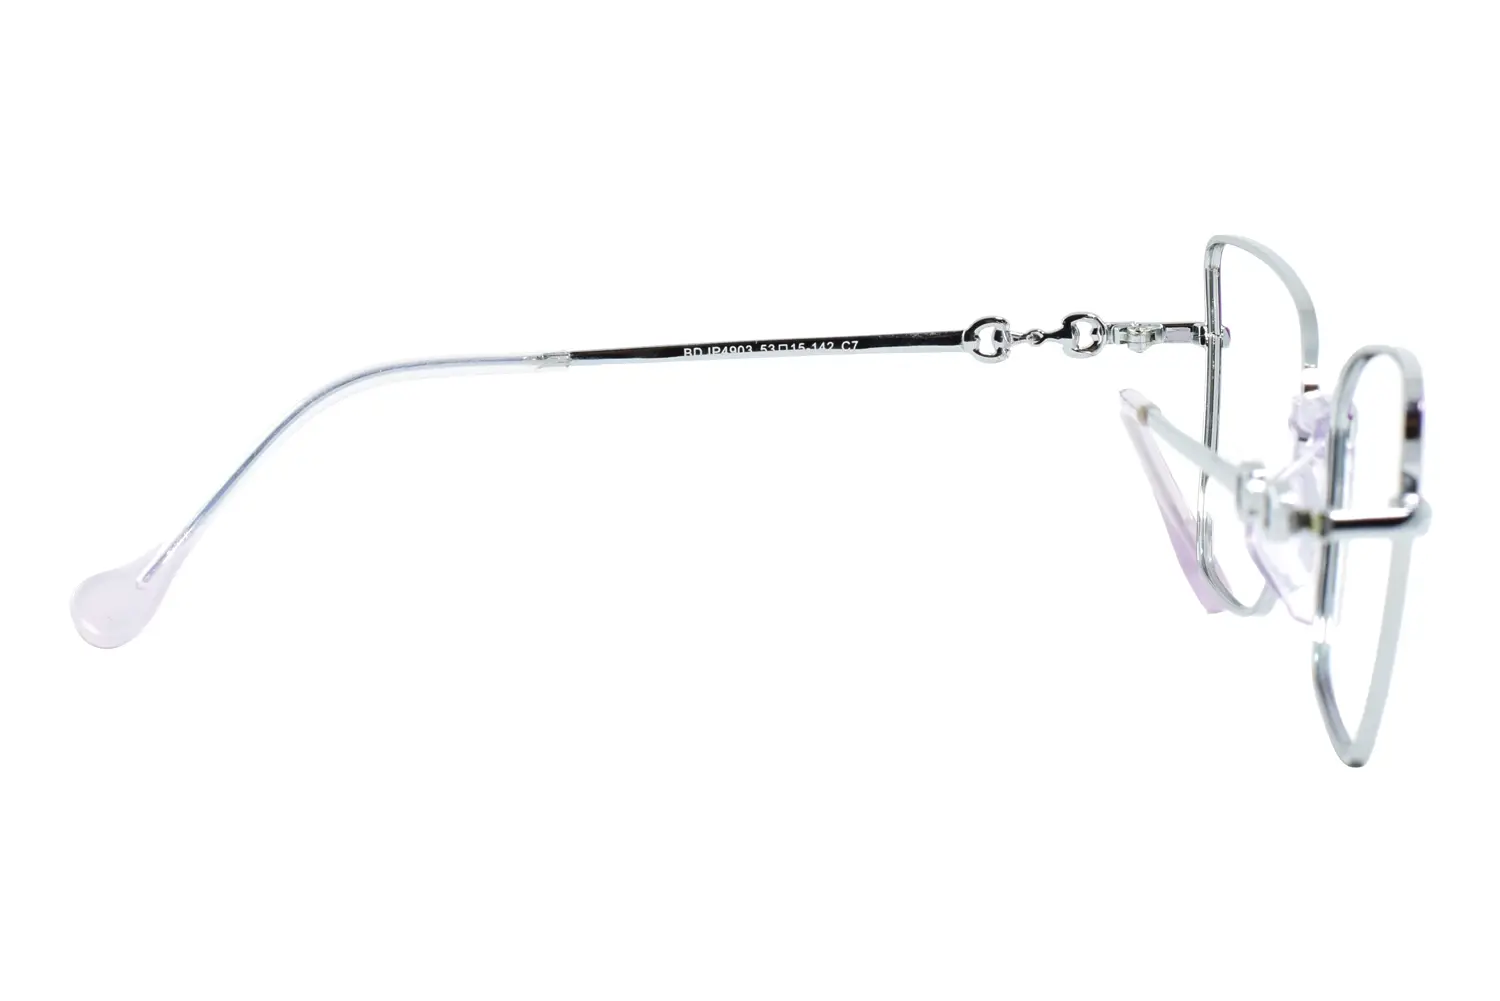 عینک طبی DIOR مدل BD IP4903 C7 - دکترعینک